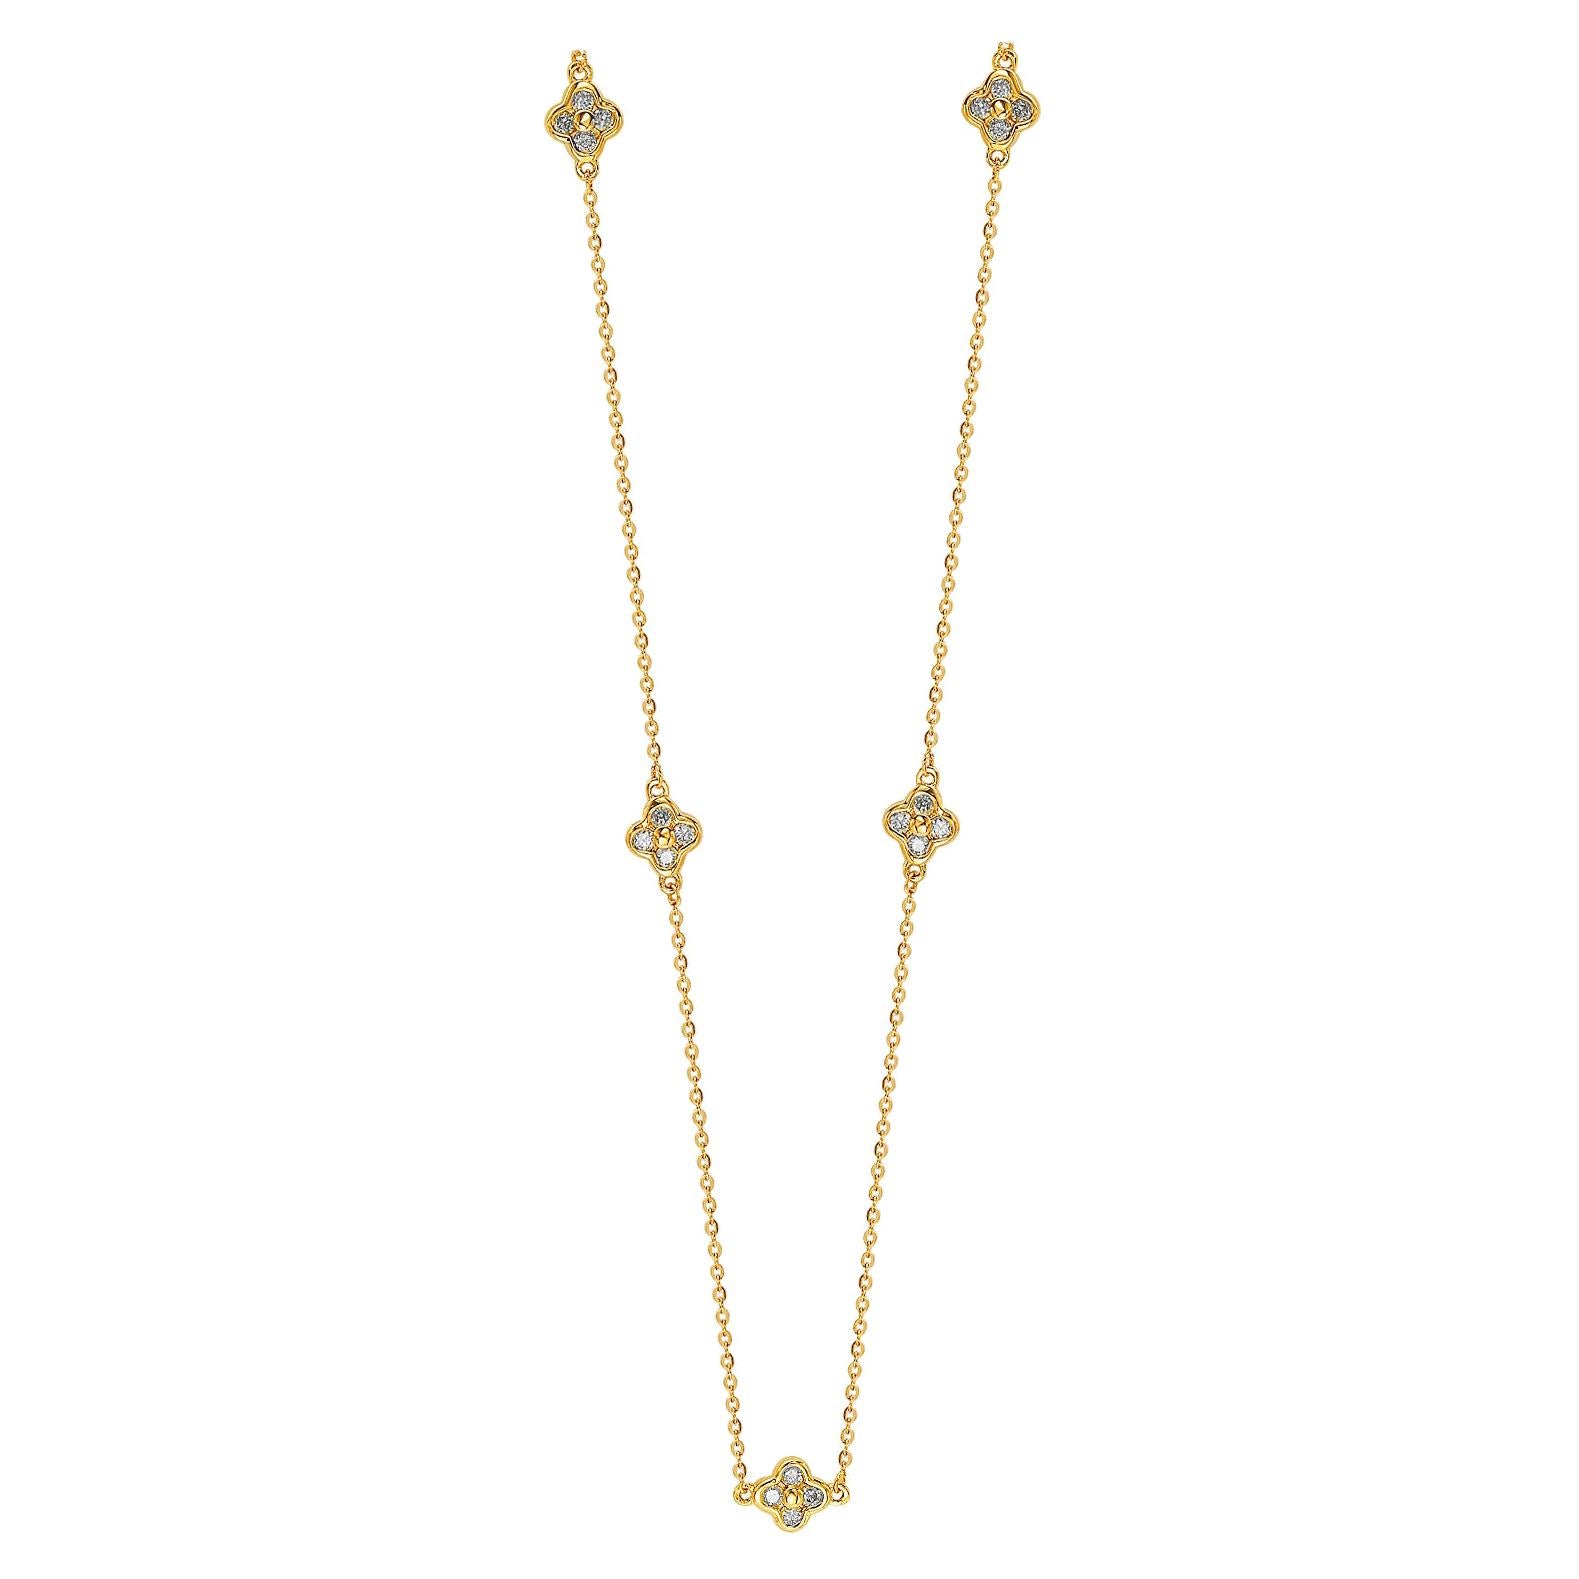 Suzy Levian, Station-Halskette, 14 Karat Gelbgold, weißer Diamant, 5 Kleeblätter pro Meter